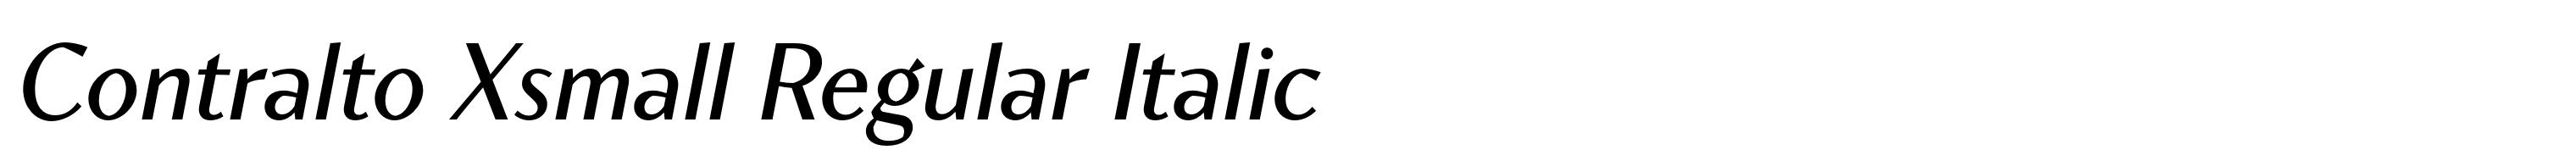 Contralto Xsmall Regular Italic